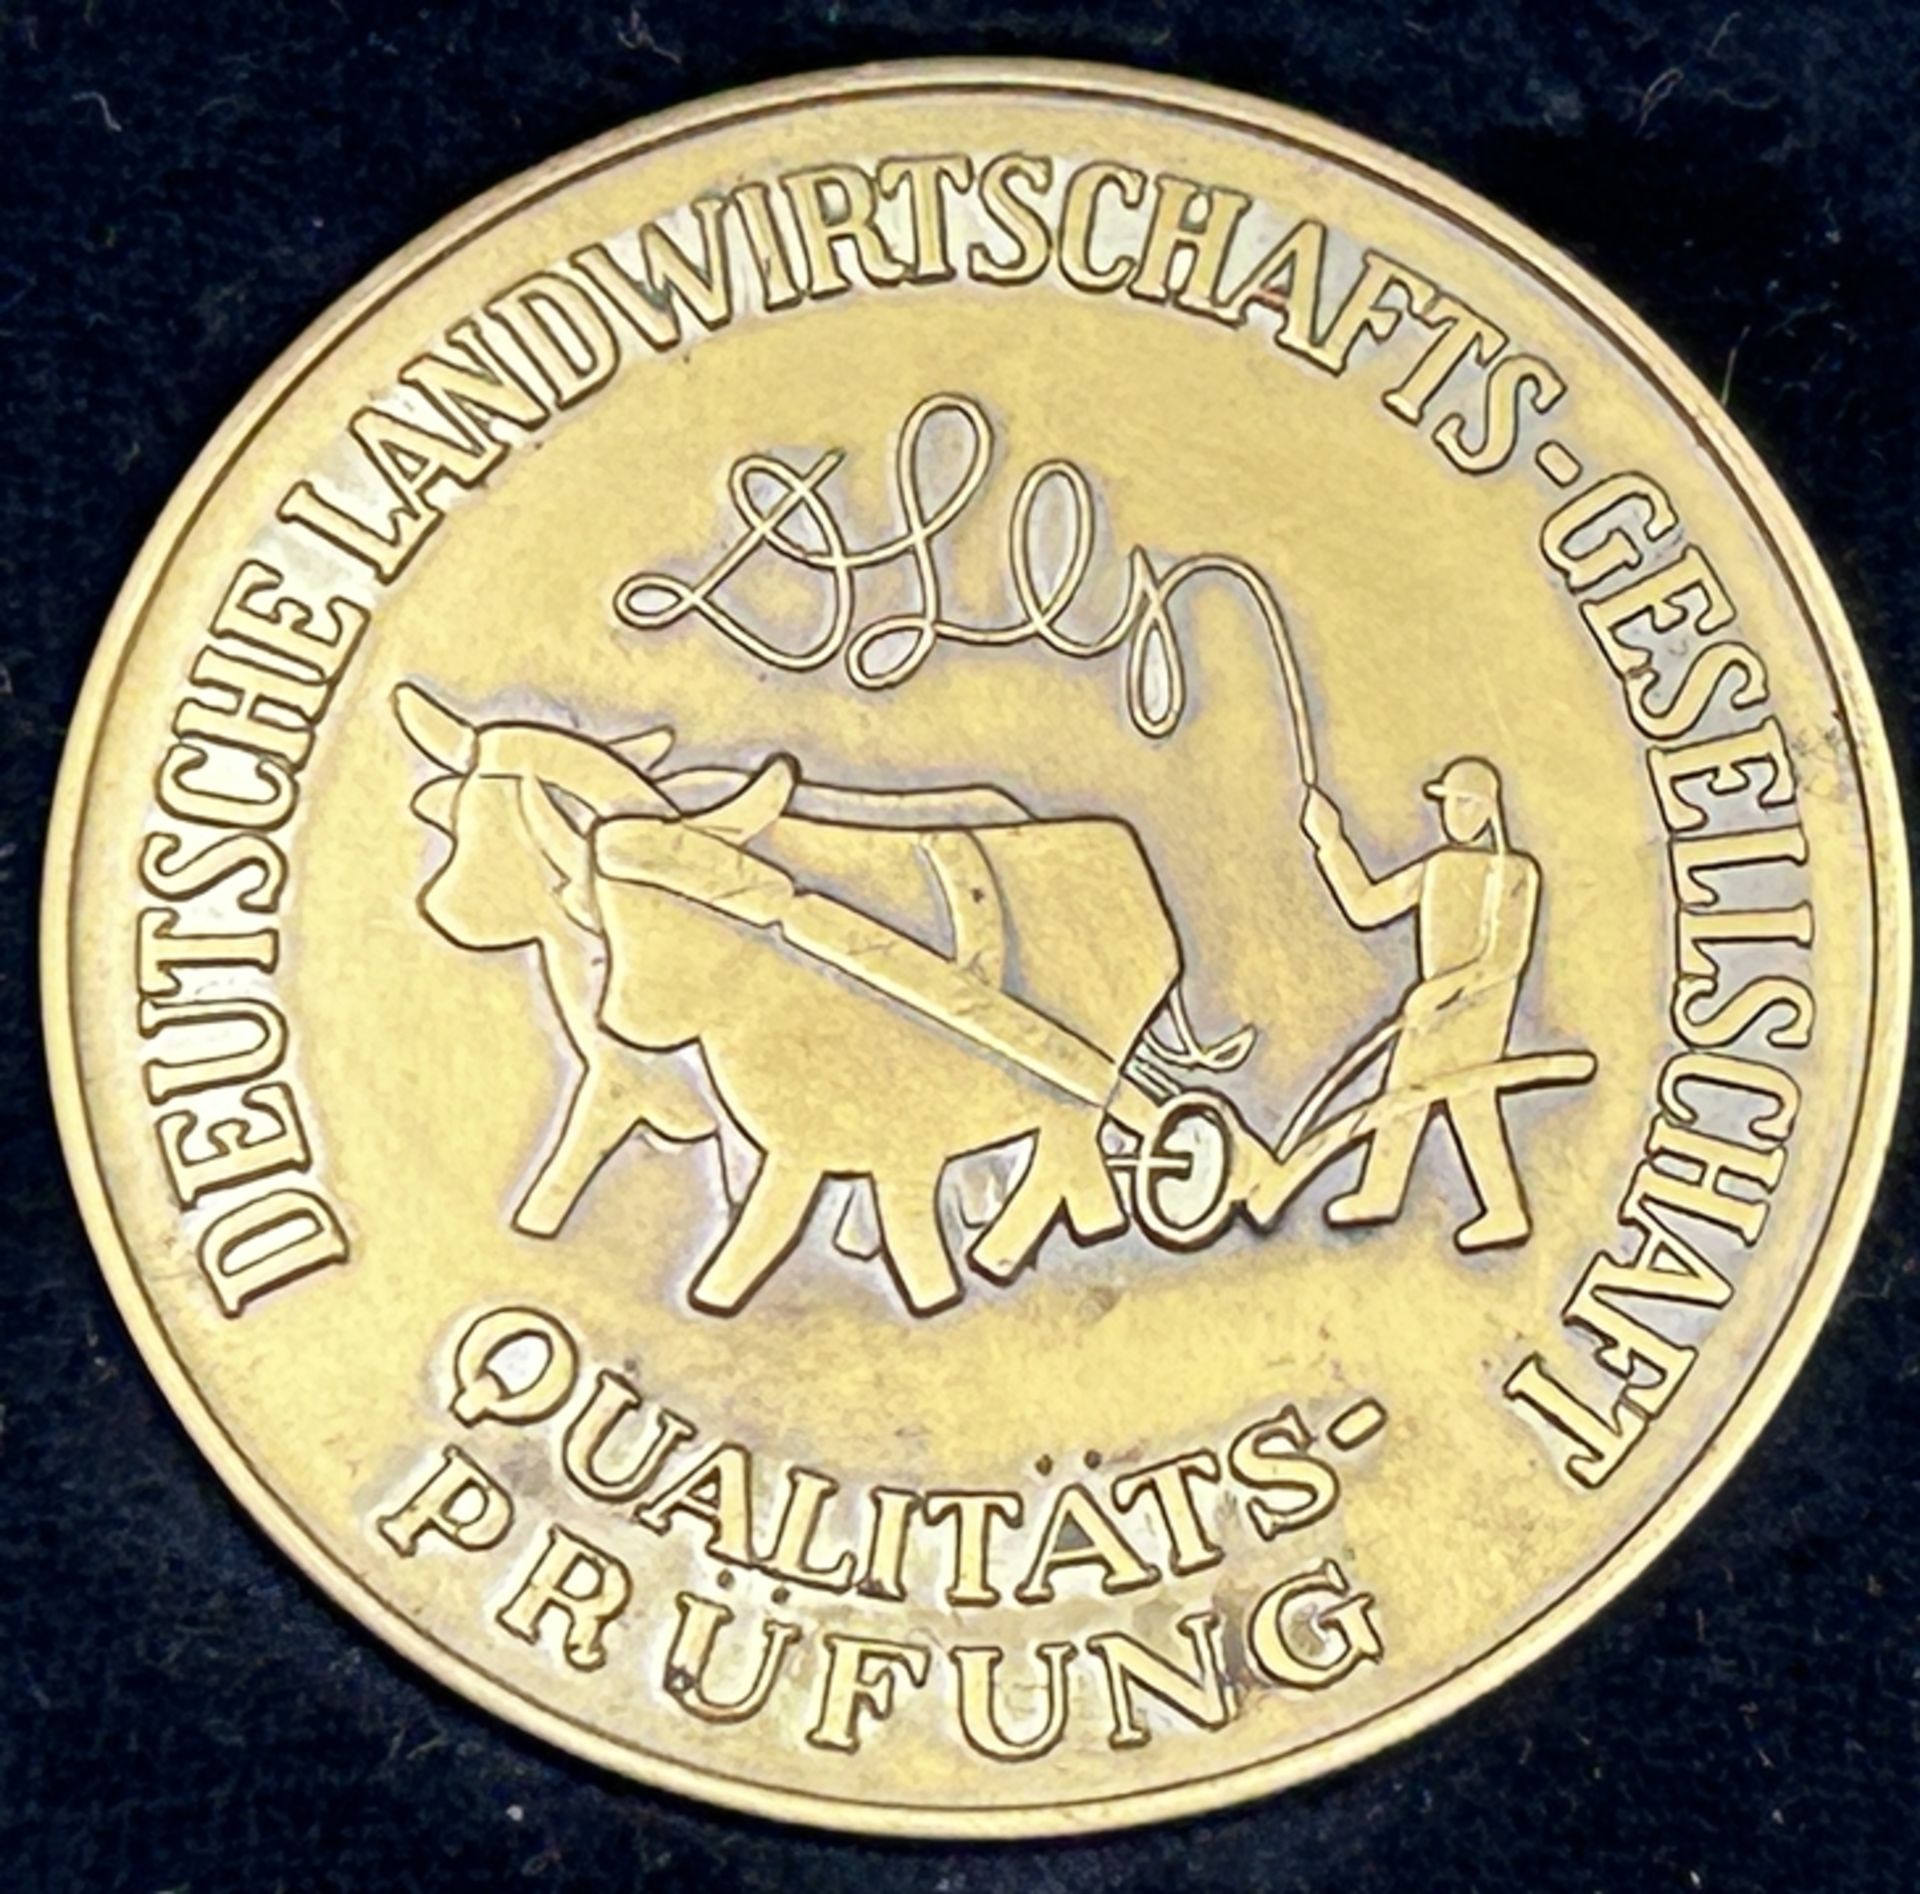 3 Preis-Plaketten "Deutsche Landwirtschaftliche Gesellschaft" in OVP, 60-er Jahre, ca. 4 cm - Image 2 of 5